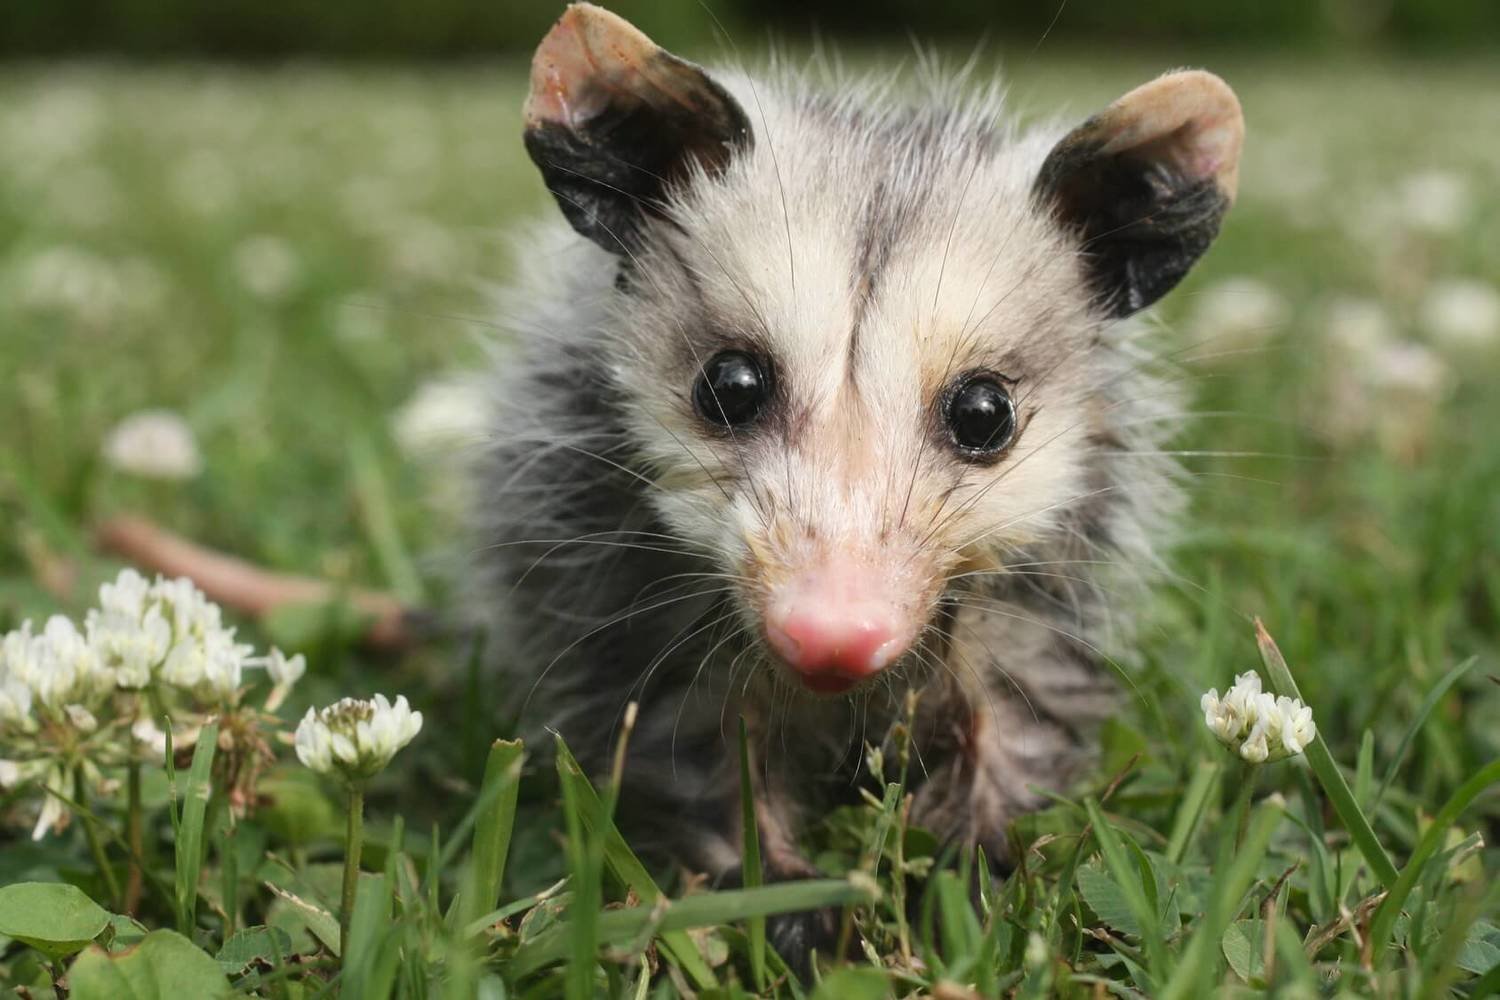 Adopt An Opossum